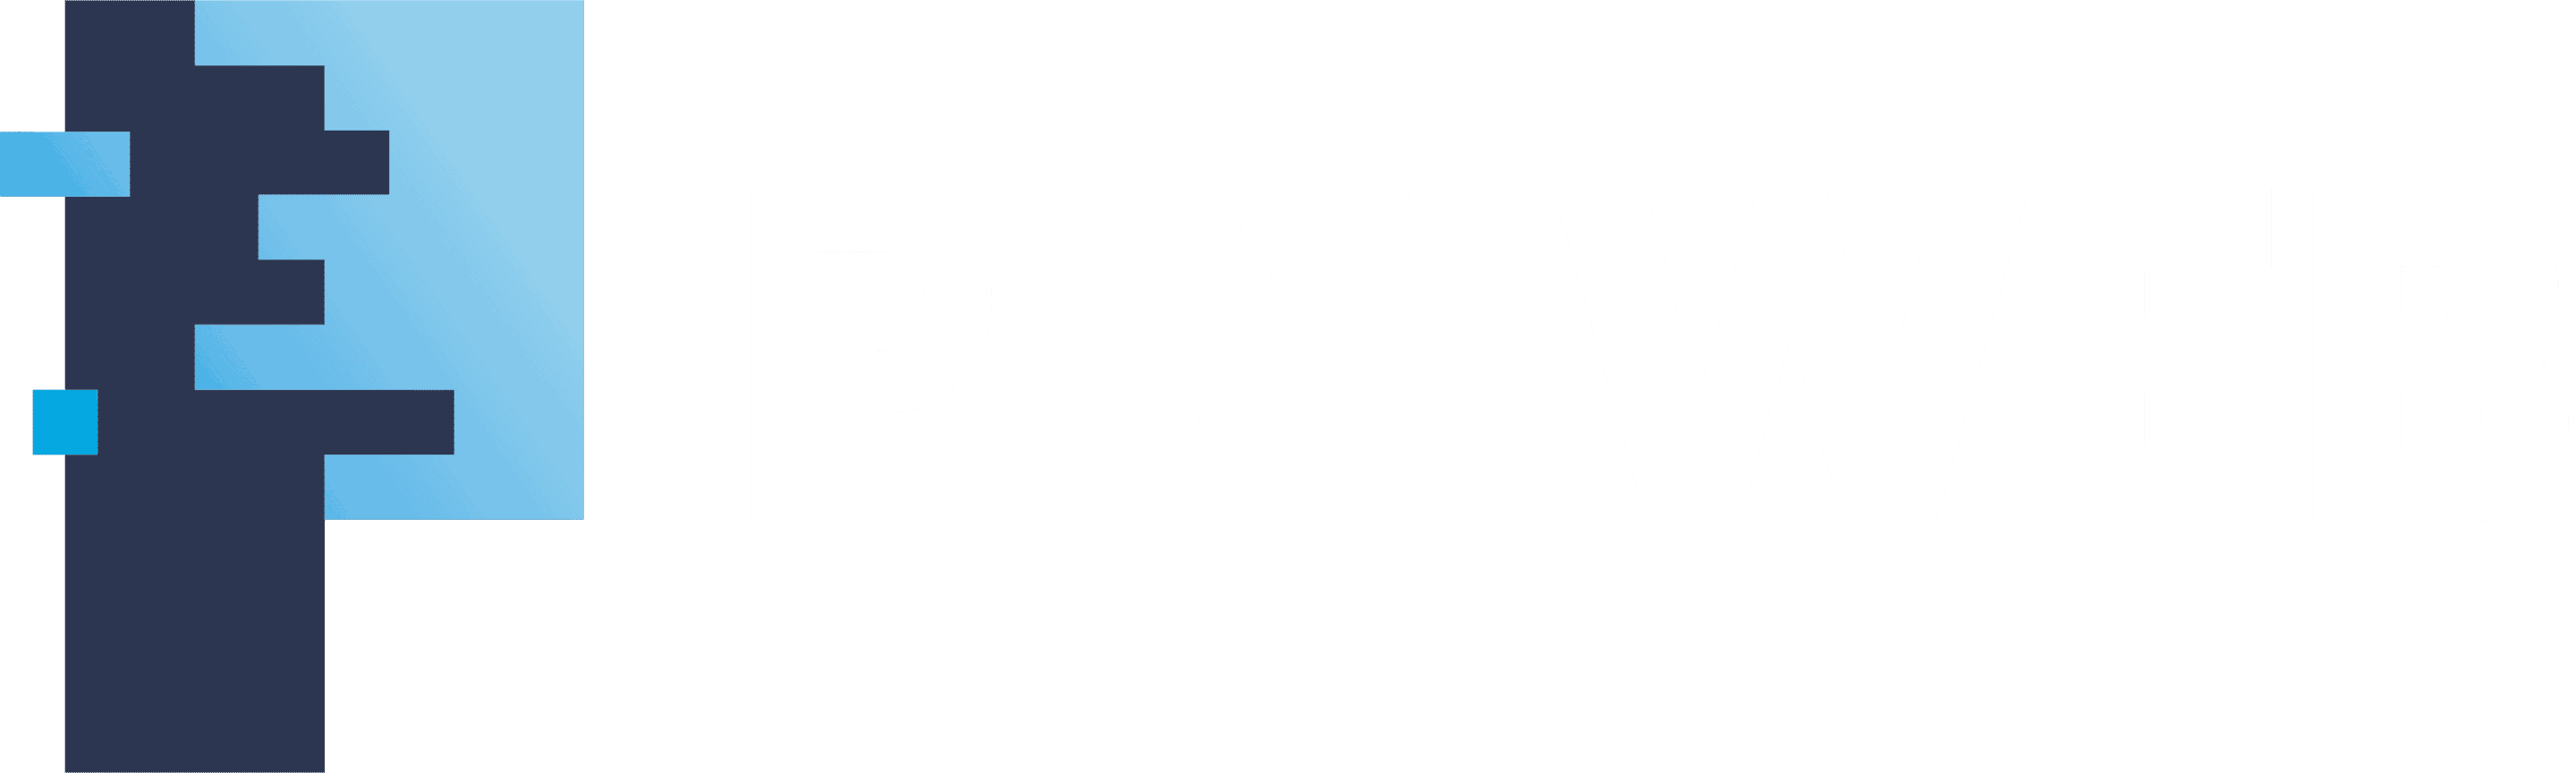 pixiweb-logo-white